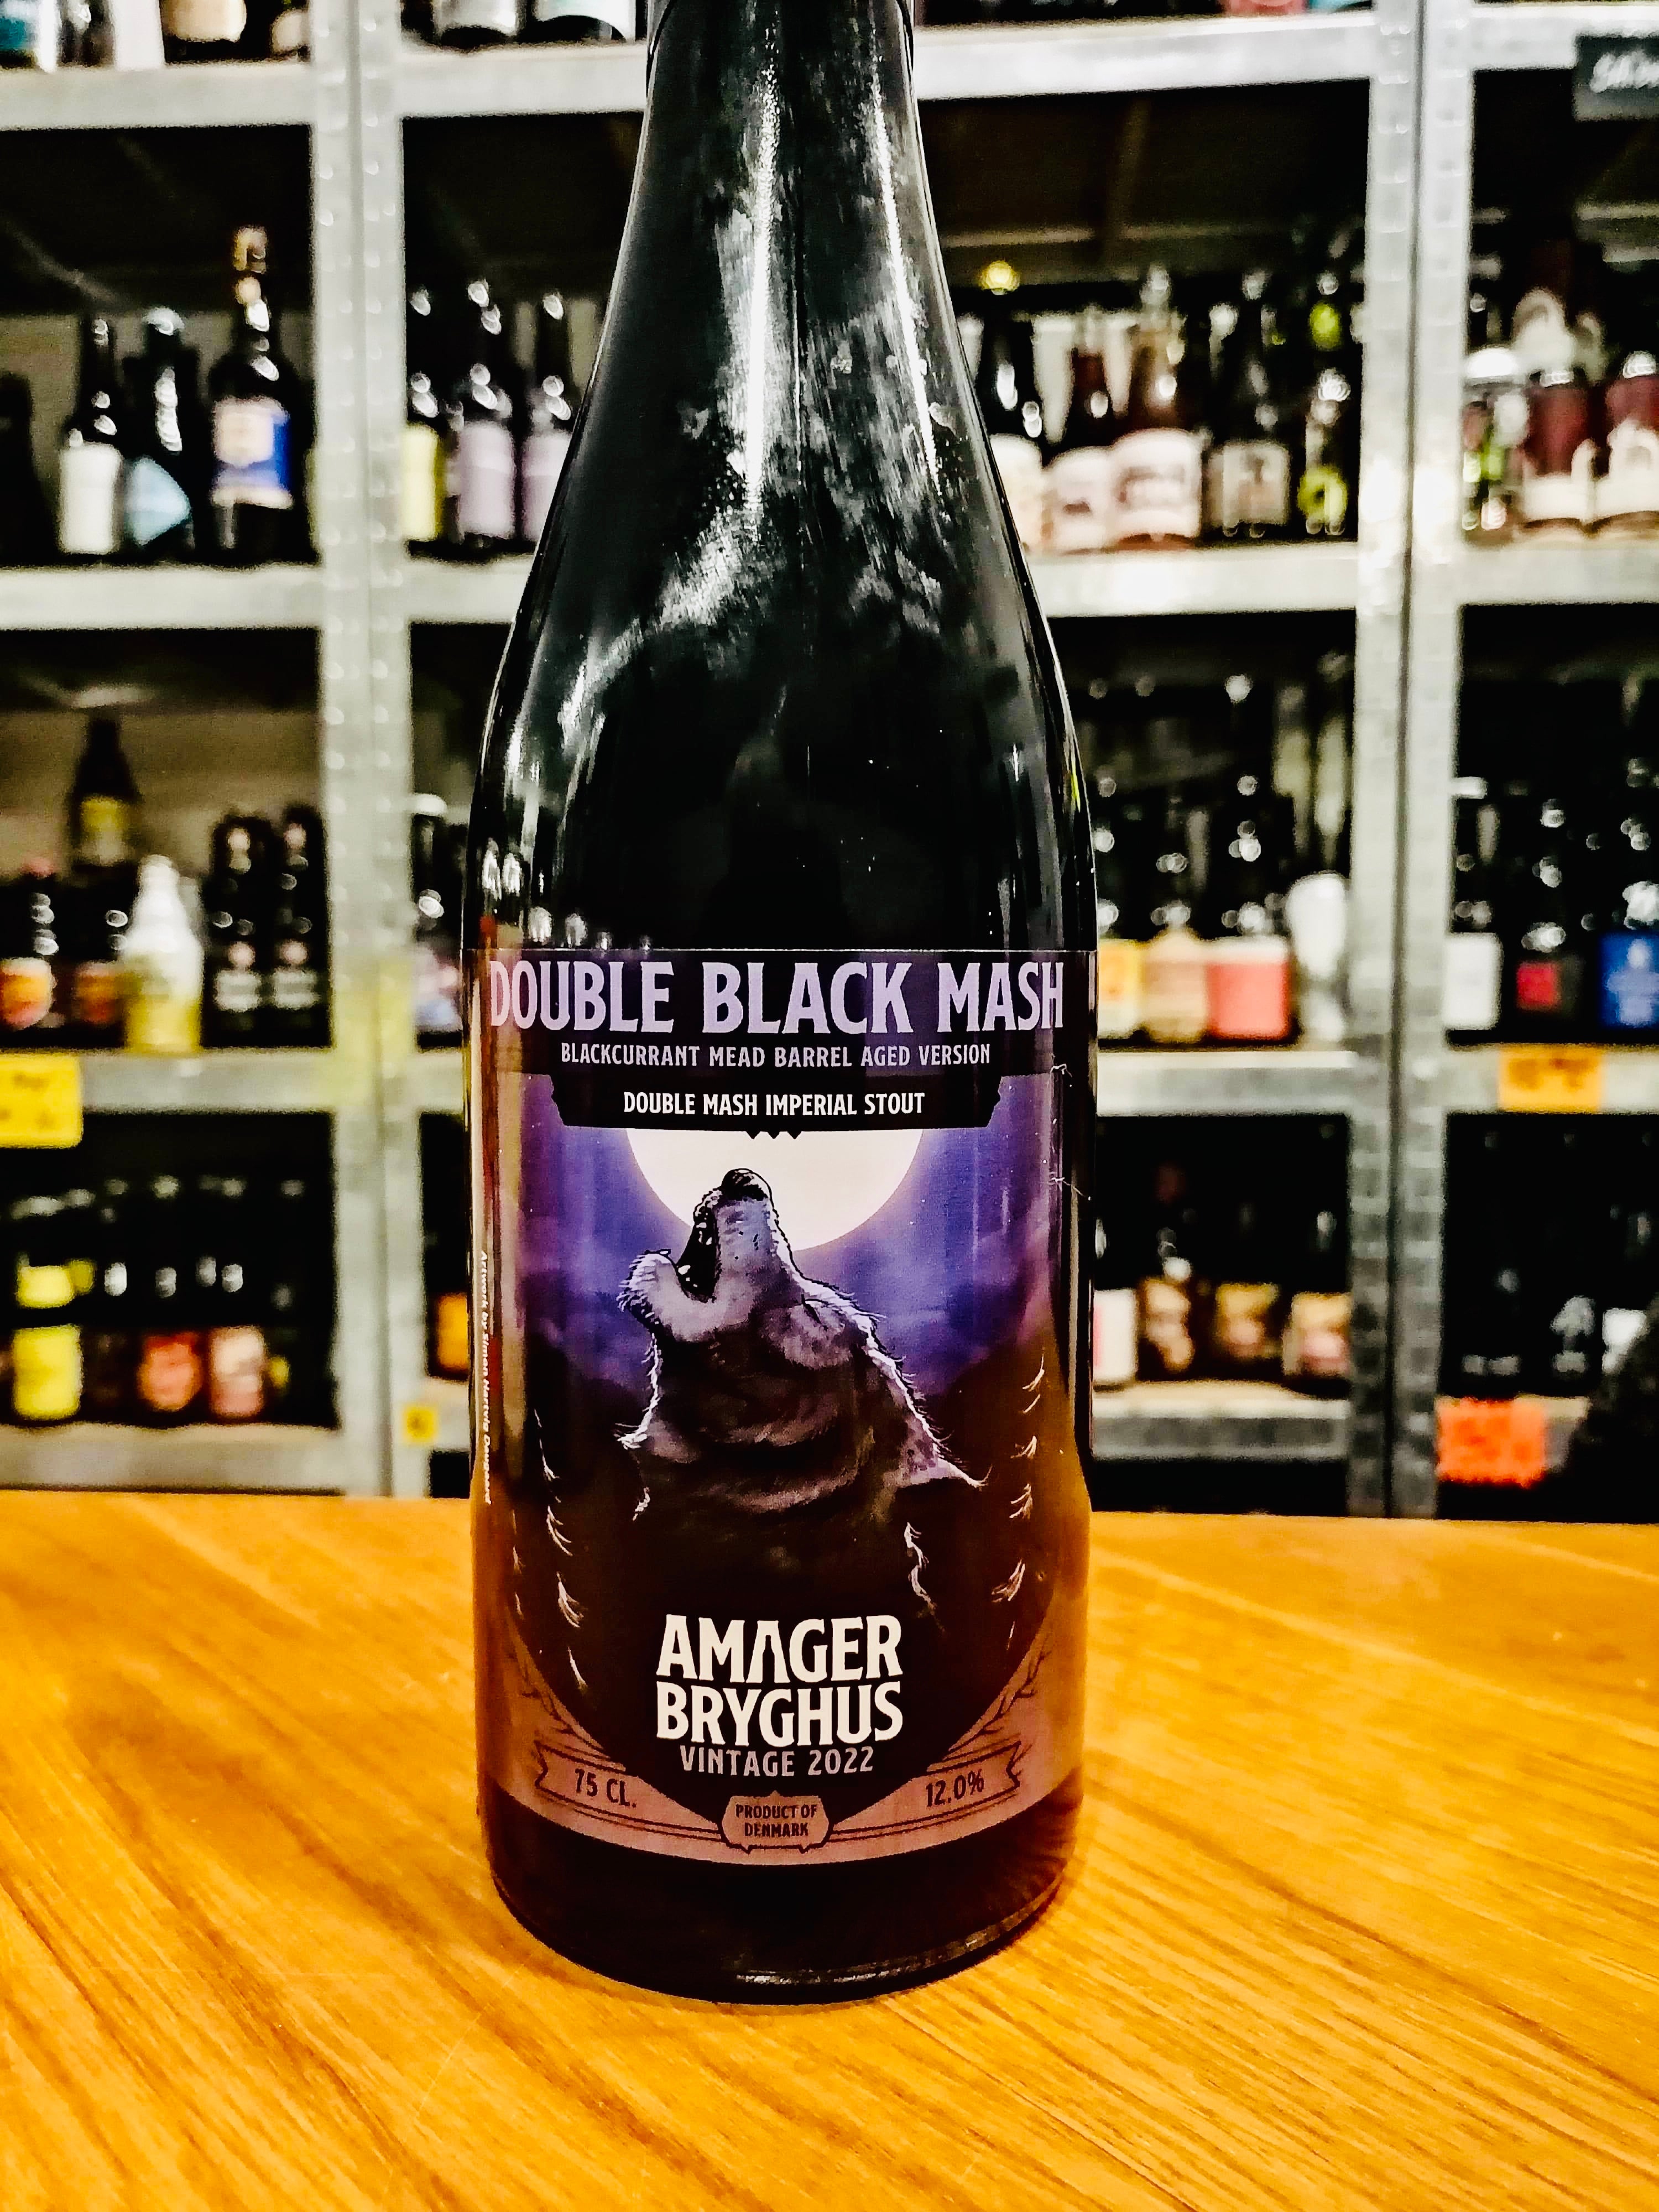 Billede af Double black mash vintage 2022 (Blackcurrant mead fadlagret) - Amager bryghus